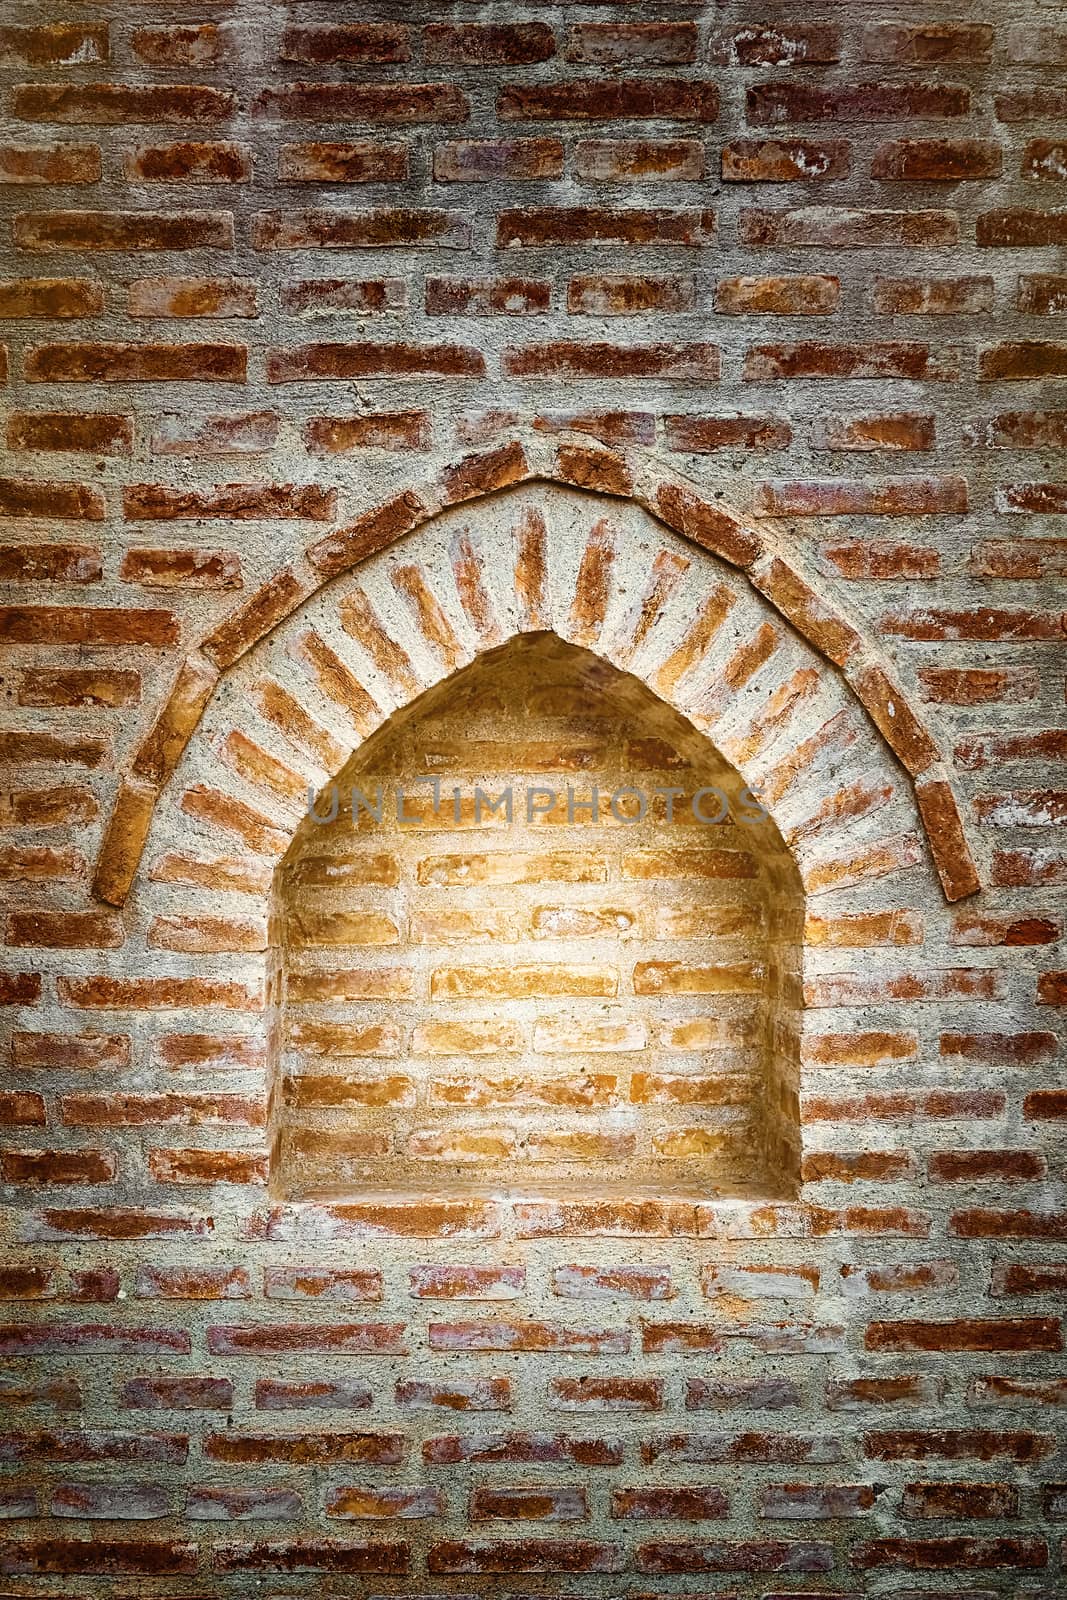 Immured Window in The Brick Wall